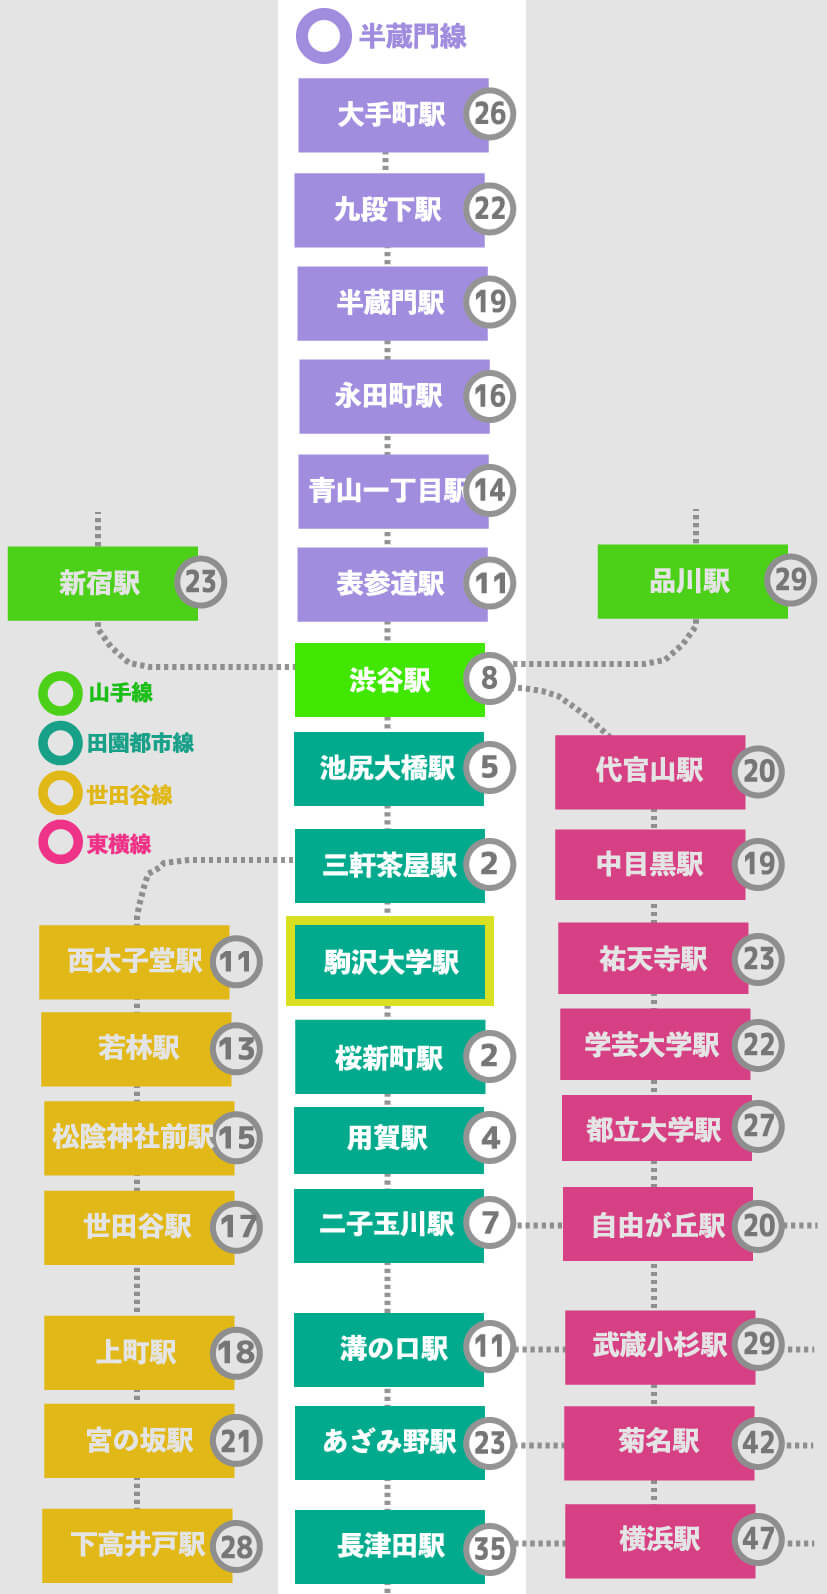 この画像は駒沢大学駅から田園都市線各駅までの乗車時間、半蔵門線への乗車時間などをまとめた表です。